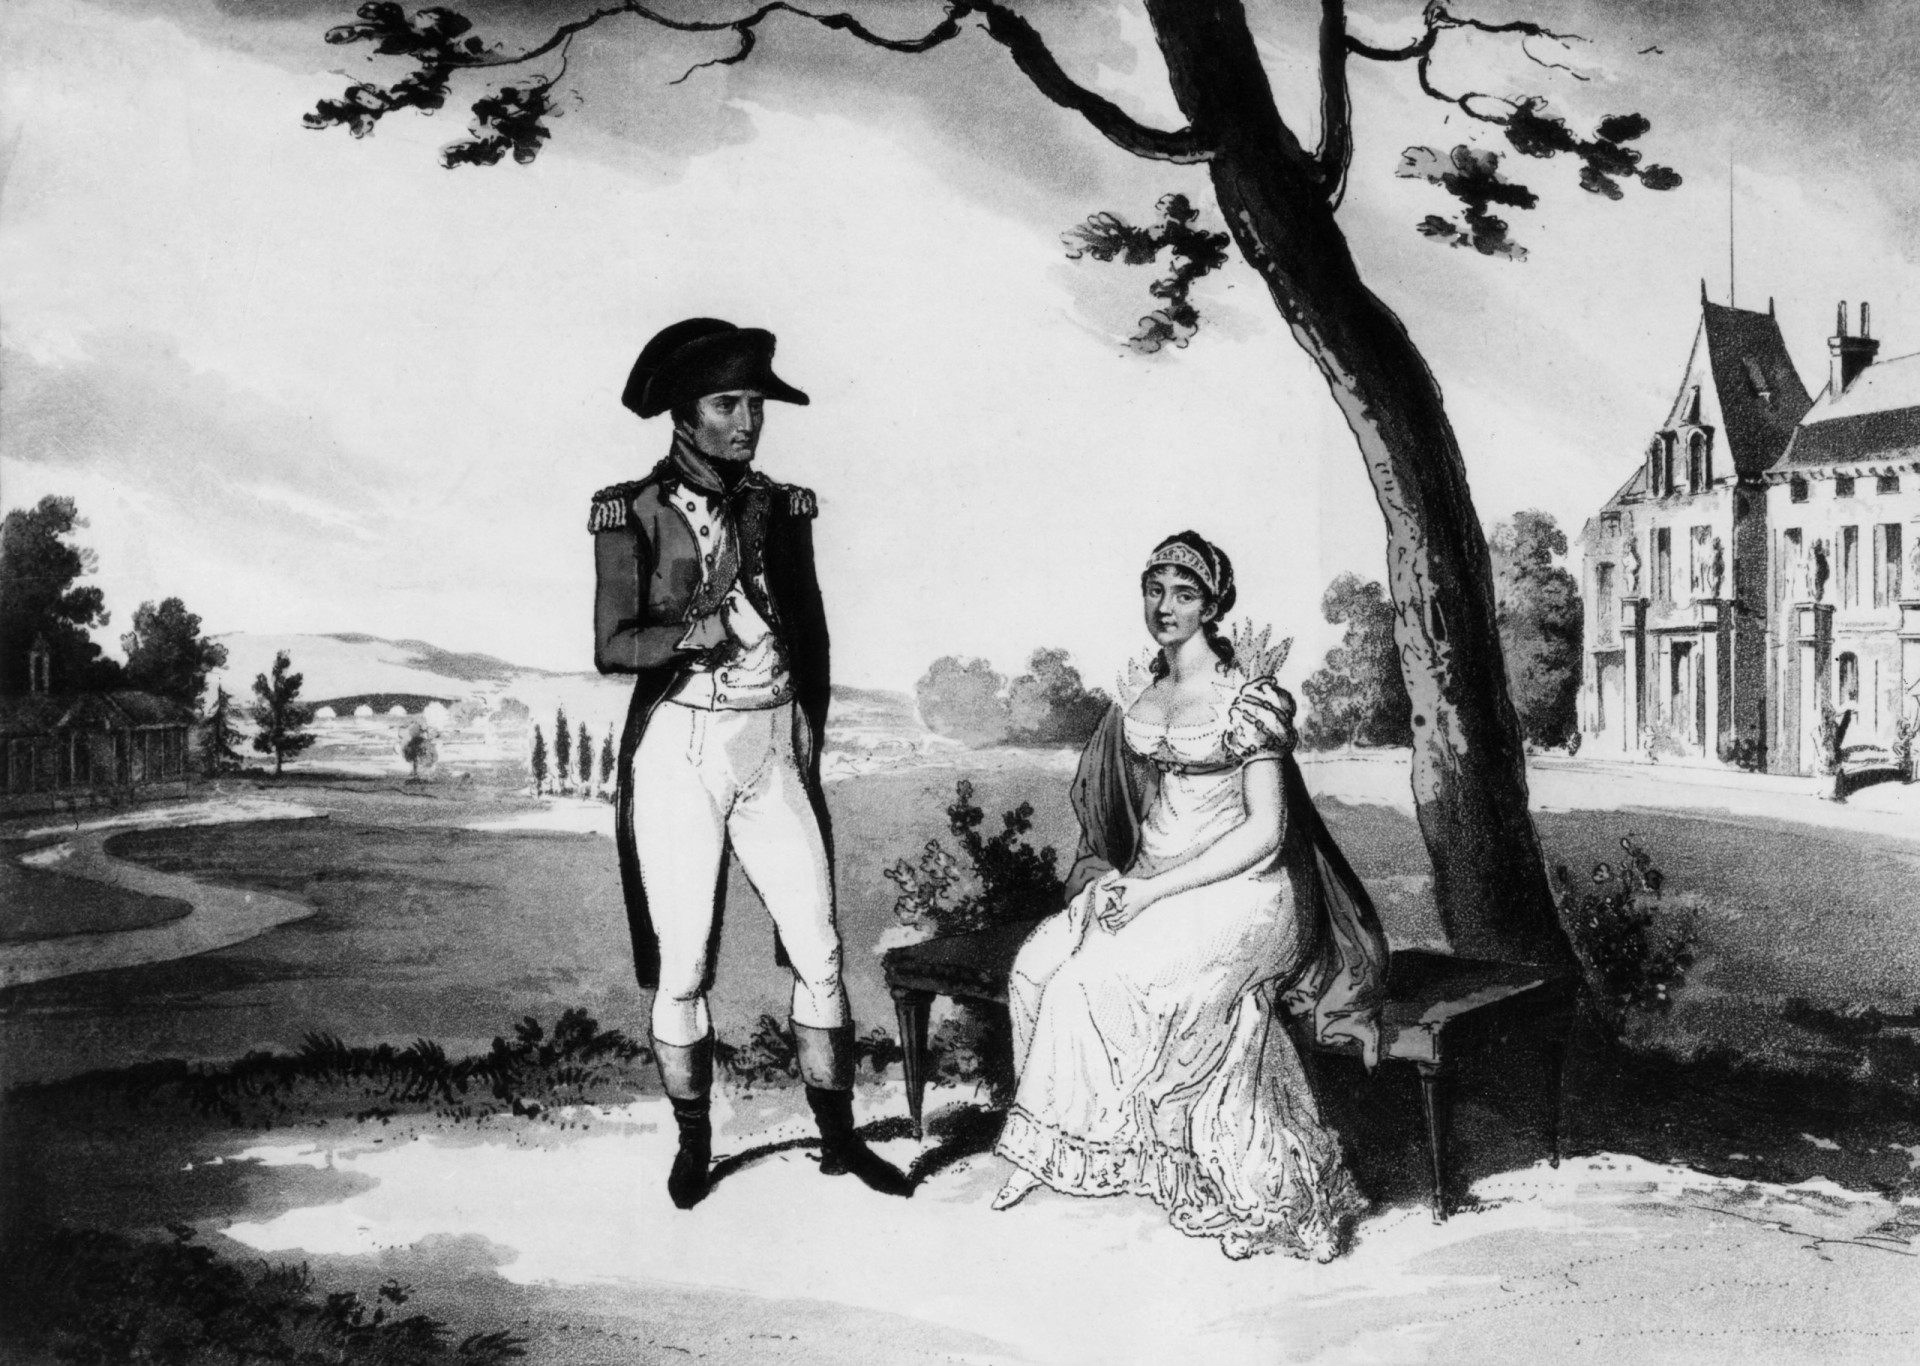 <p>Am 9. März 1796 heirateten sie in einer zivilen Zeremonie in Paris, die aus mehreren Gründen ungültig war. Joséphine hatte ihr Alter auf 29 Jahre herabgesetzt, der Beamte, der die Trauung vornahm, war nicht befugt, und Napoleon gab eine falsche Adresse und ein falsches Geburtsdatum an. Auch bei Napoleons Familie stieß die Heirat auf wenig Gegenliebe. Sie waren schockiert, dass er eine ältere Witwe mit zwei Kindern geheiratet hatte.</p>